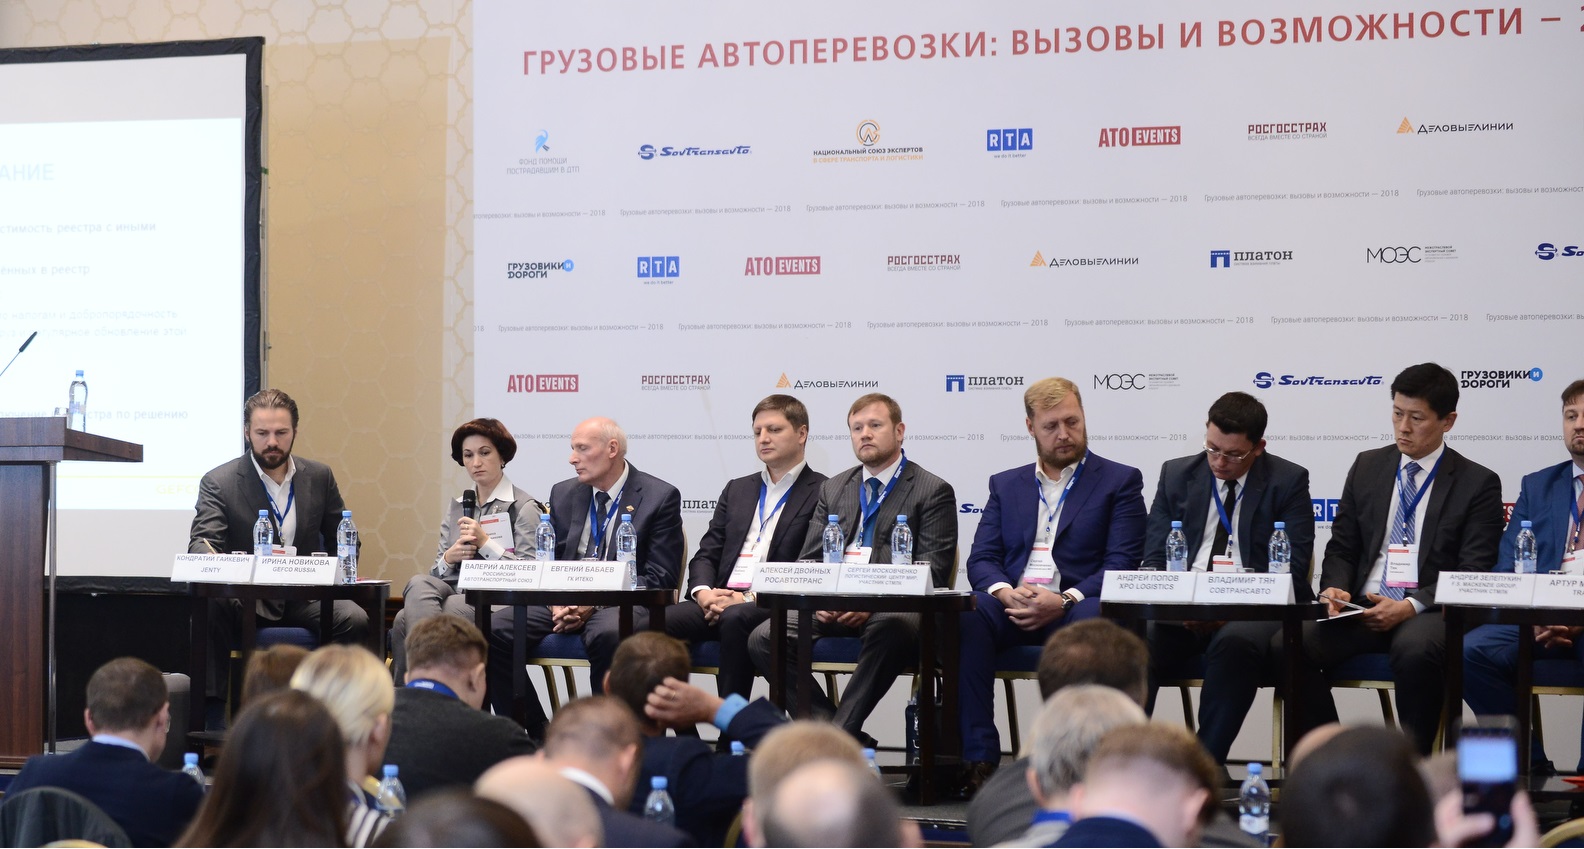 конференция «Грузовые автоперевозки: вызовы и возможности»